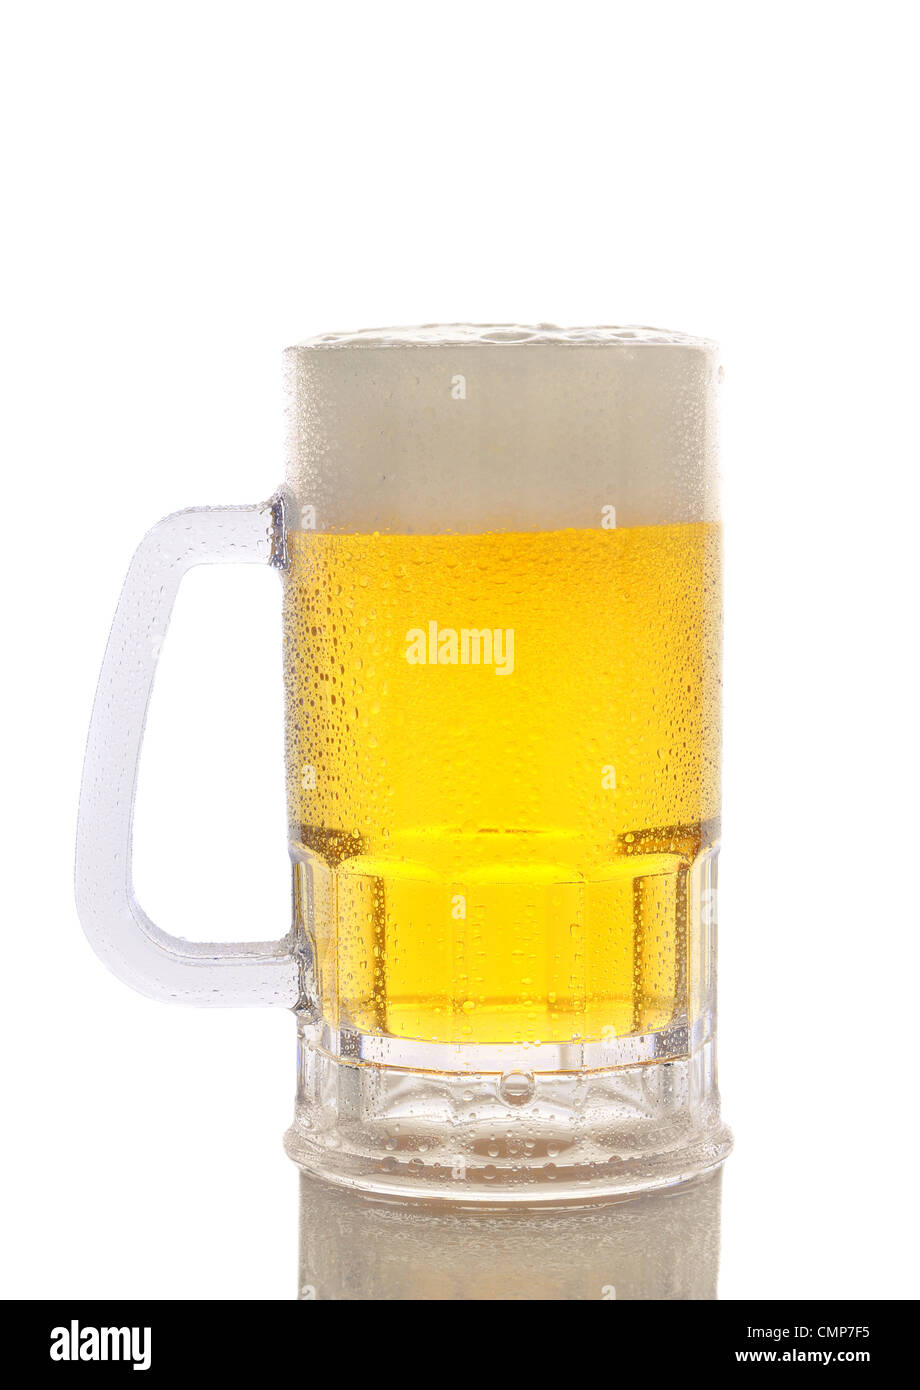 Un freddo gelido boccale di birra su uno sfondo bianco. Verticale con la riflessione. Foto Stock